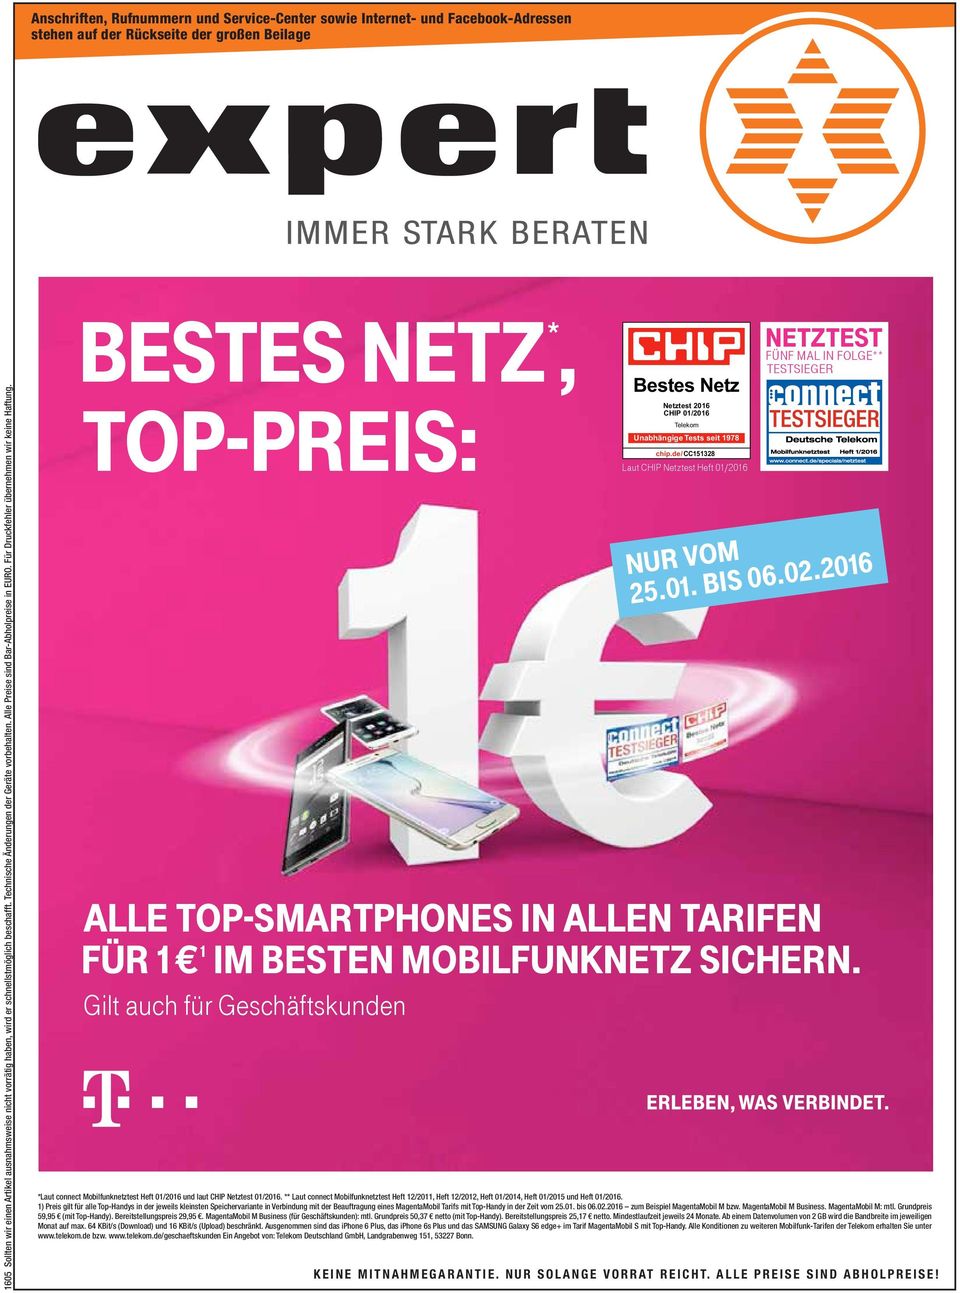 bestes Netz *, top-preis: Gilt auch für Geschäftskunden Bestes Netz Netztest 2016 CHIP 01/2016 Telekom Unabhängige Tests seit 1978 chip.